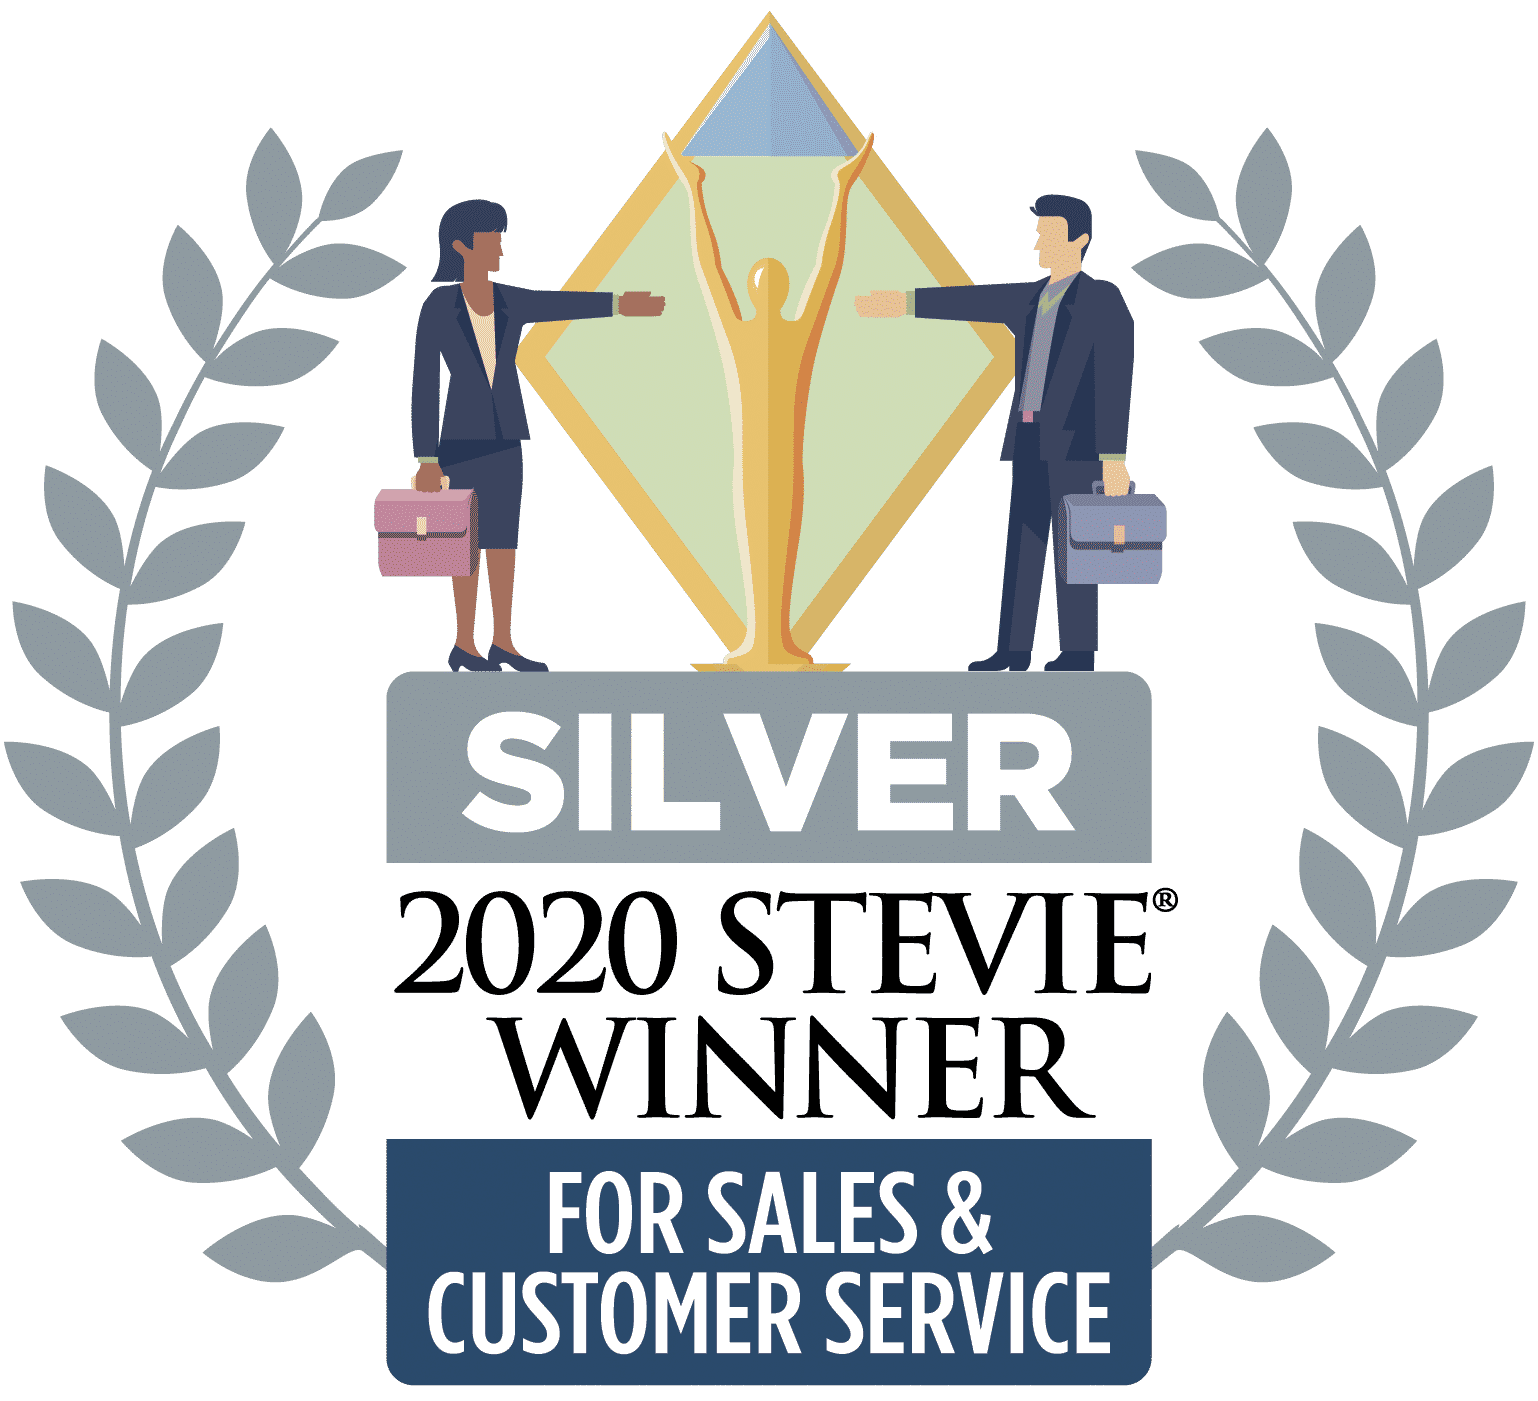 2020 Silver Stewie Award